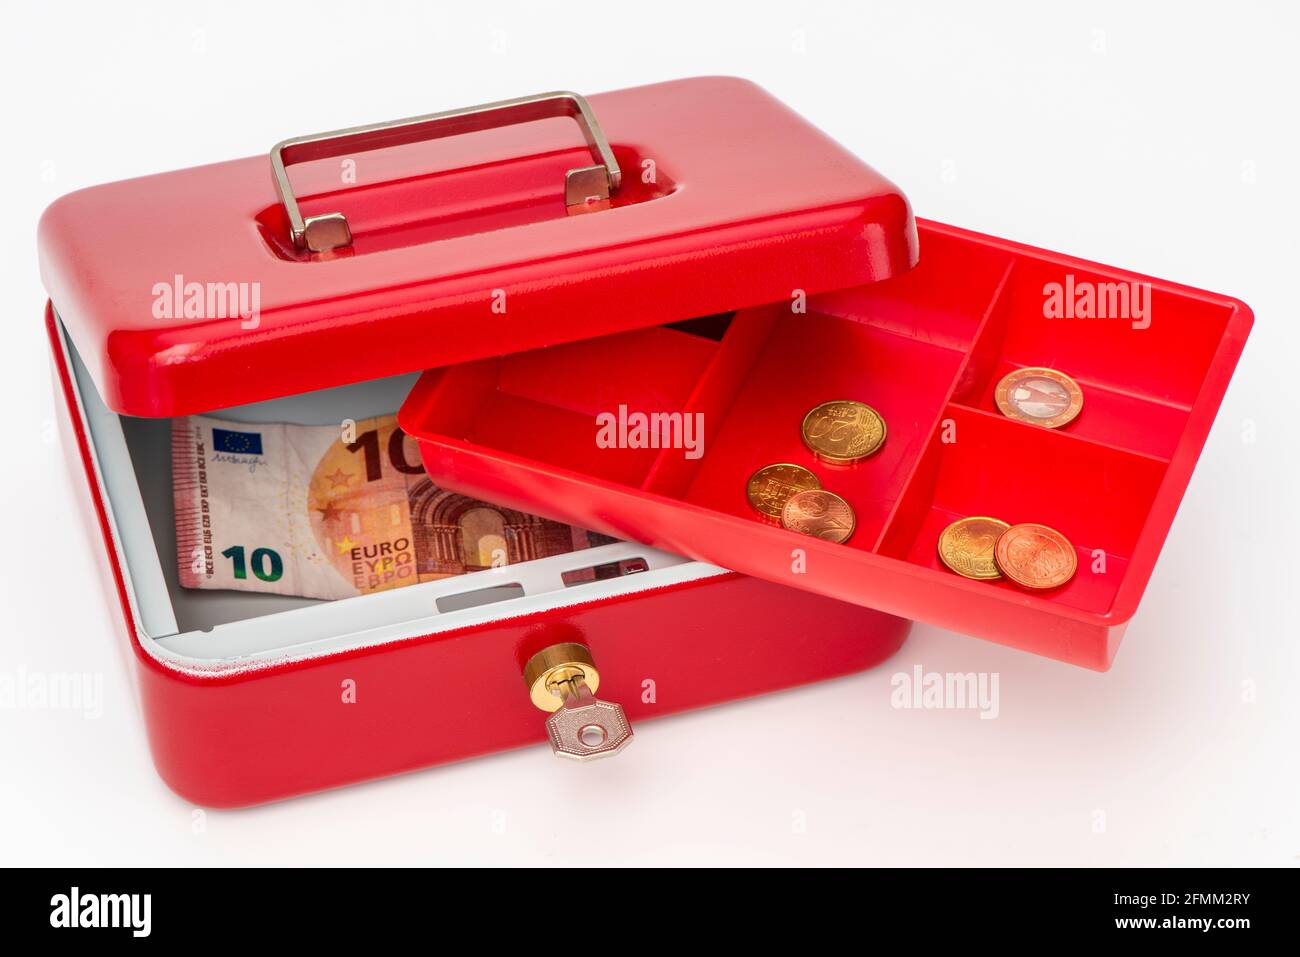 Geldkassette mit wenig Bargeld Foto de stock